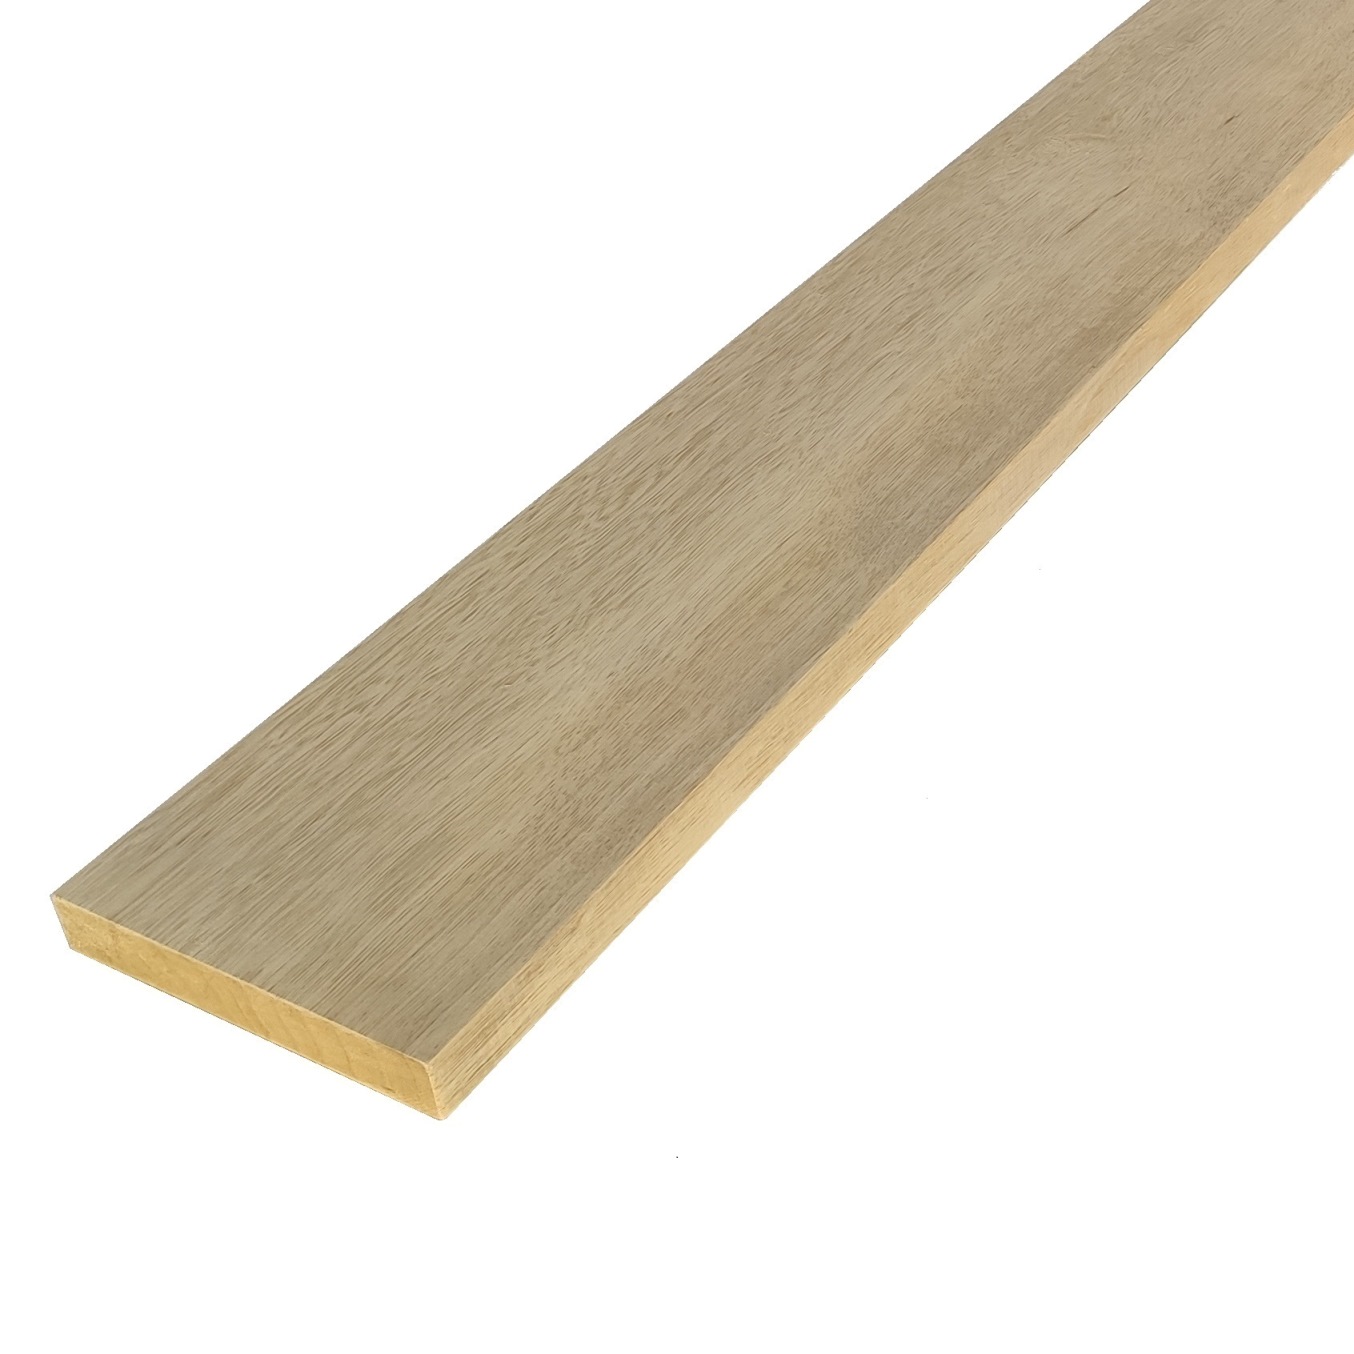 Tavola legno Frakè Refilato Piallato mm 23 x 110 x 2100